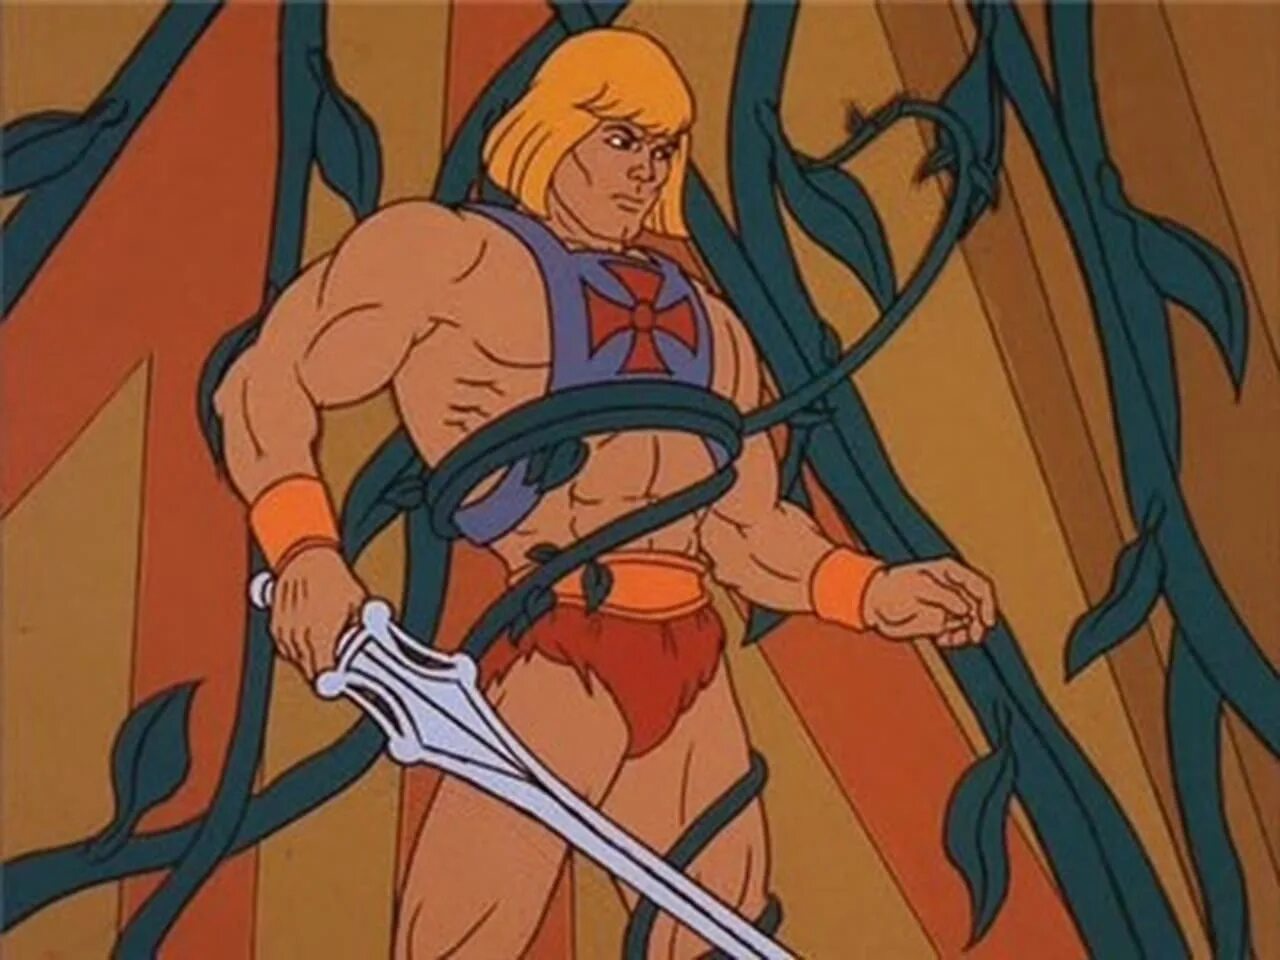 И мен и властелины. He-man and the Masters of the Universe 1983. Хи Мэн и Властелины Вселенной скелетор. Властелины Вселенной скелетор.